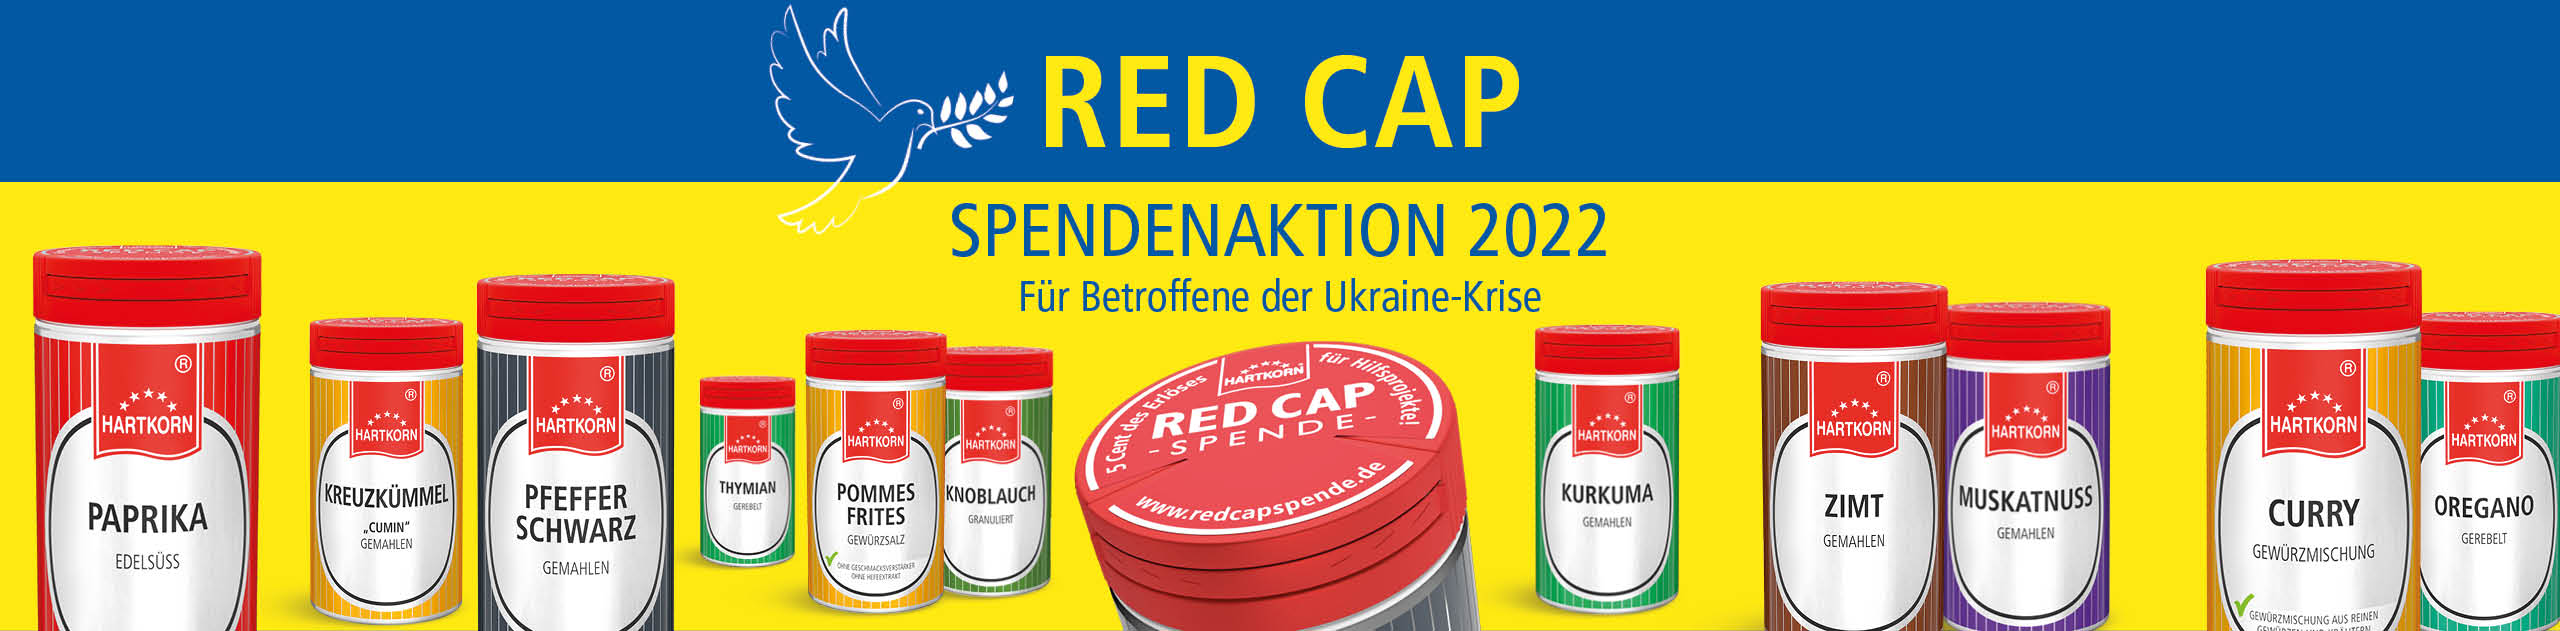 Hartkorn Header Red Cap Spendenaktion - Betroffene der Ukraine-Krise